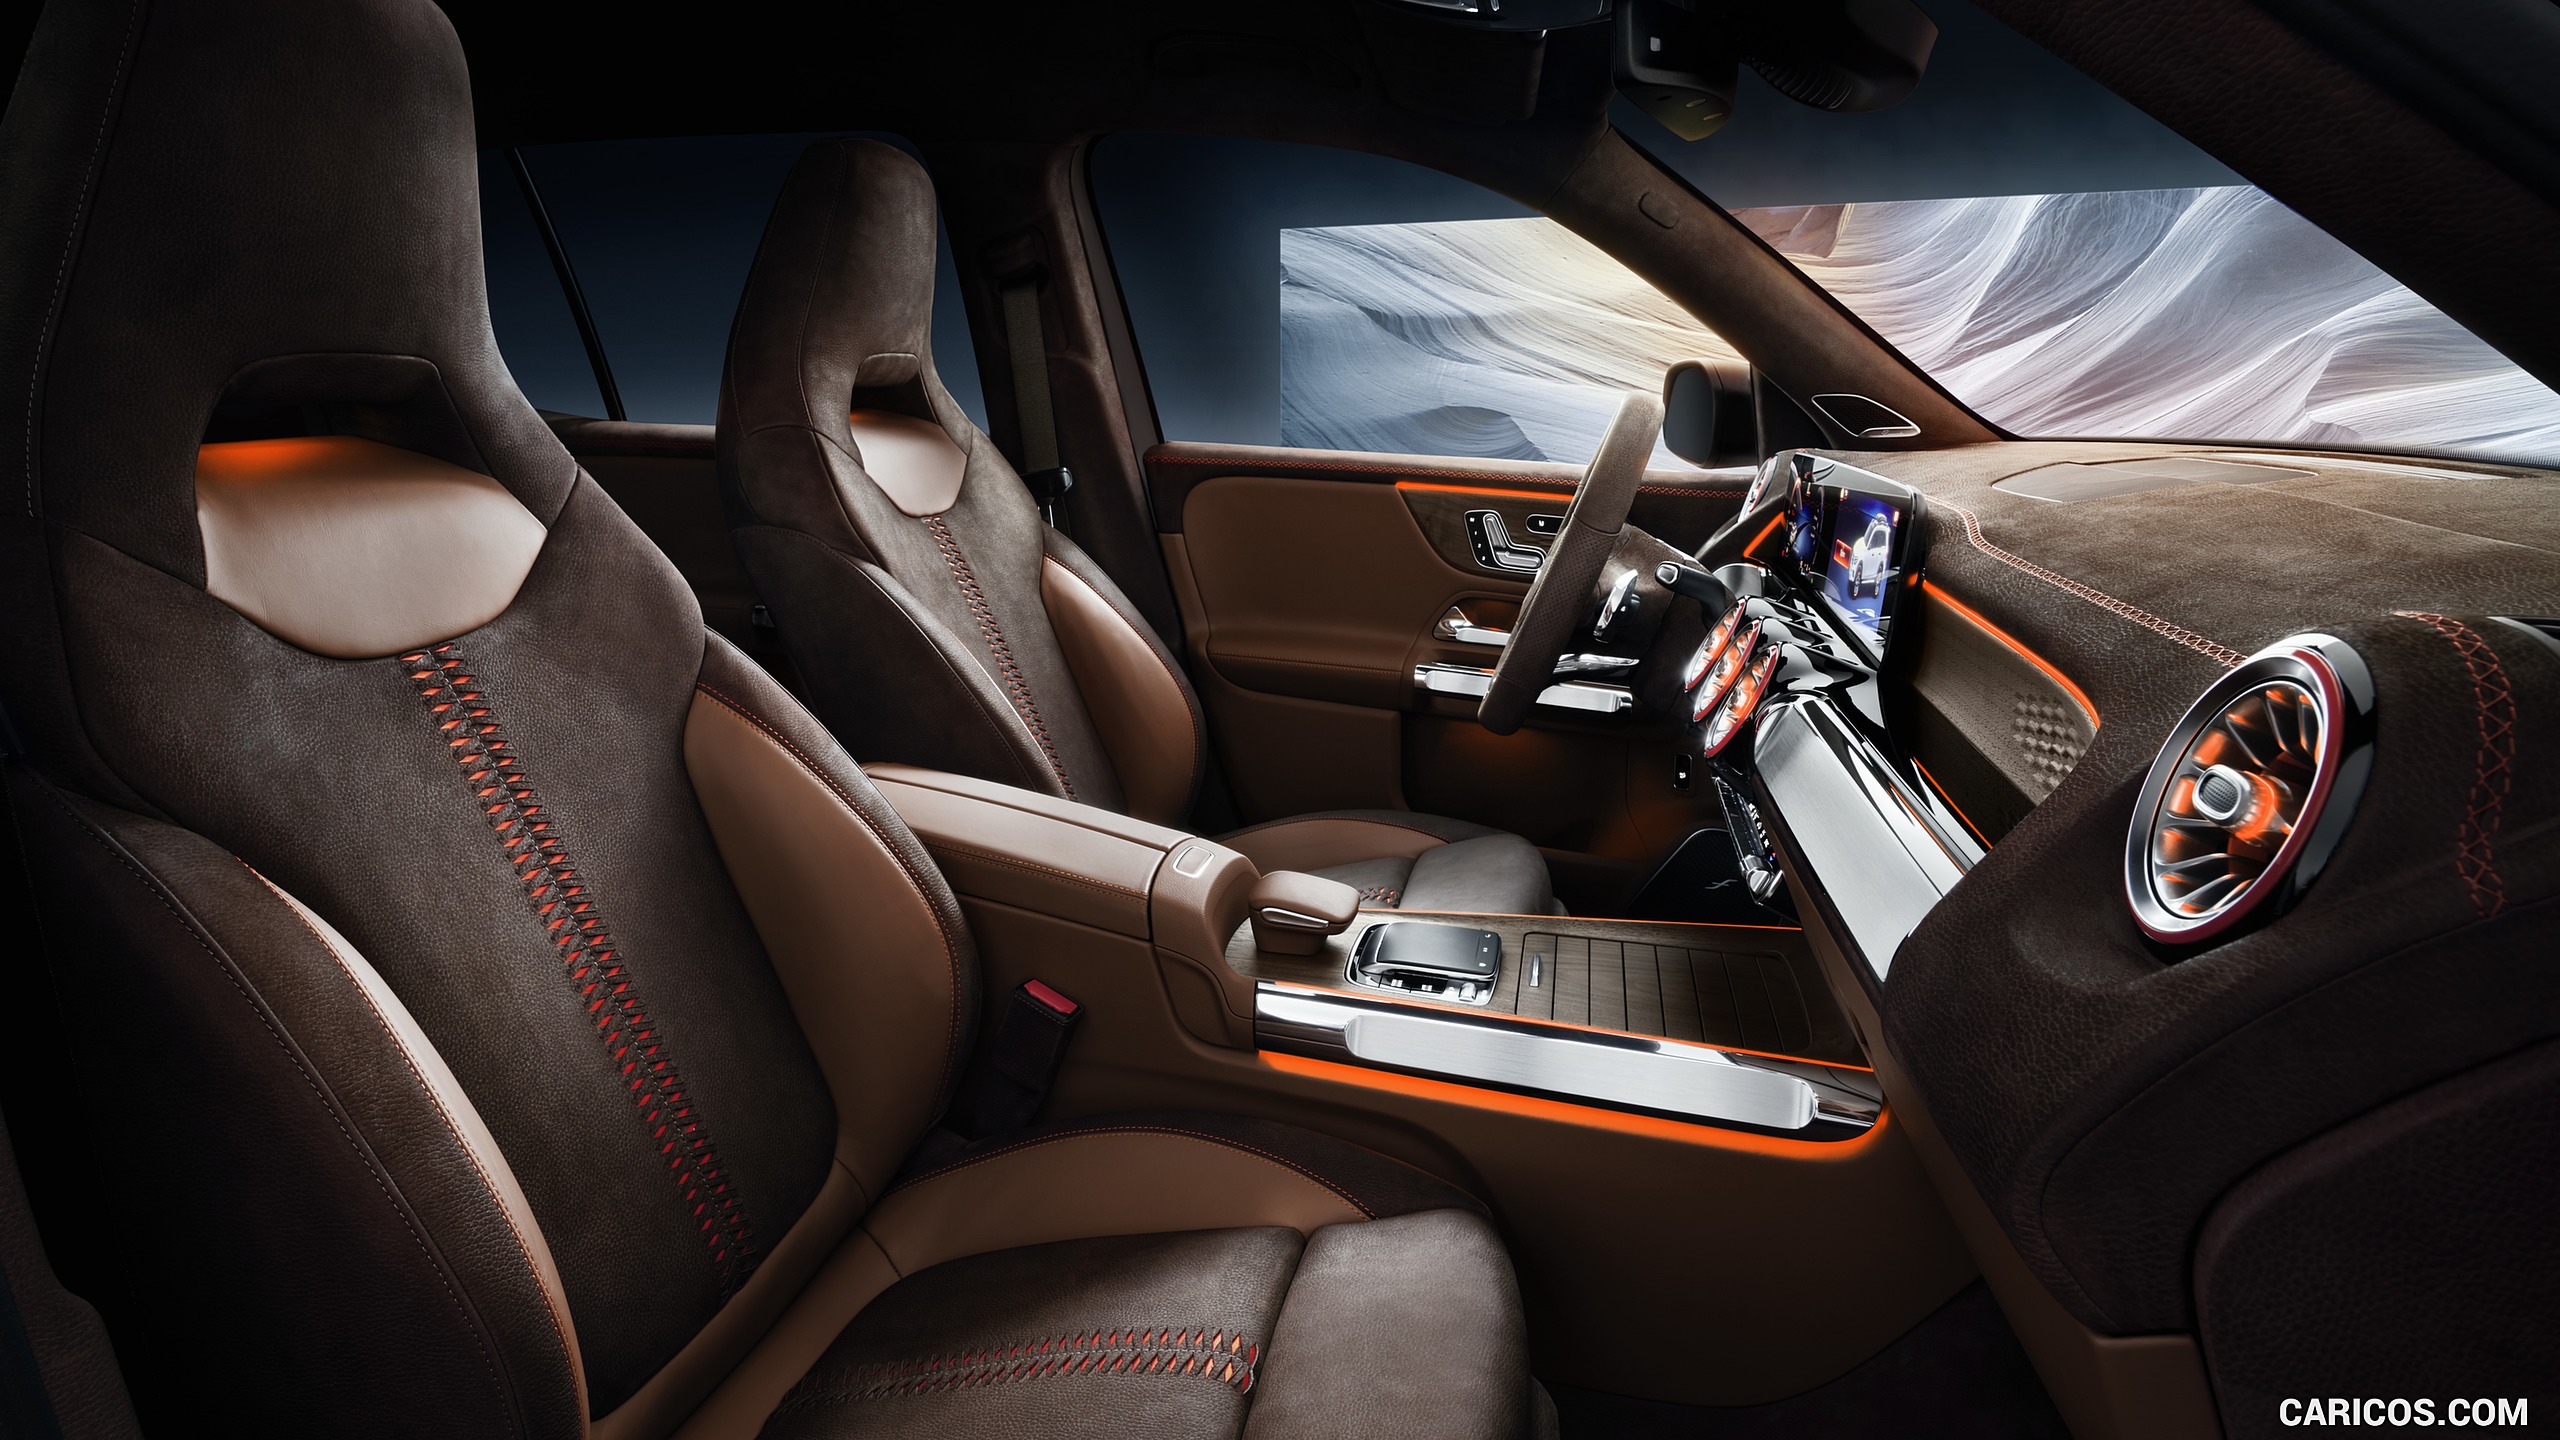 2019 Mercedes-Benz GLB Concept - Interior, Front Seats, #15 of 20